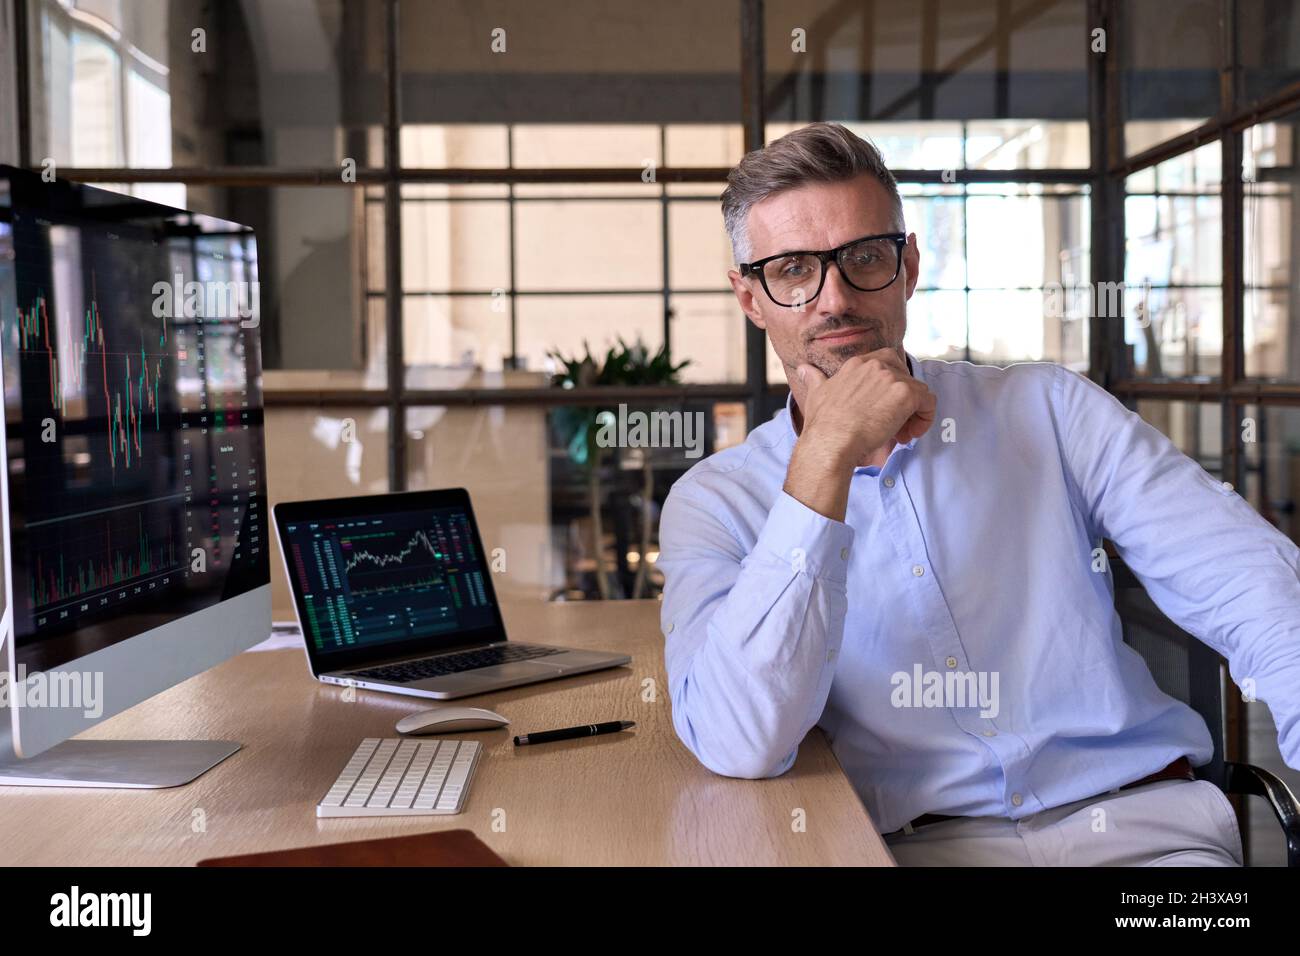 Serious männlich ceo Geschäftsmann Händler Blick auf Kamera am Schreibtisch mit pc-Computern. Stockfoto